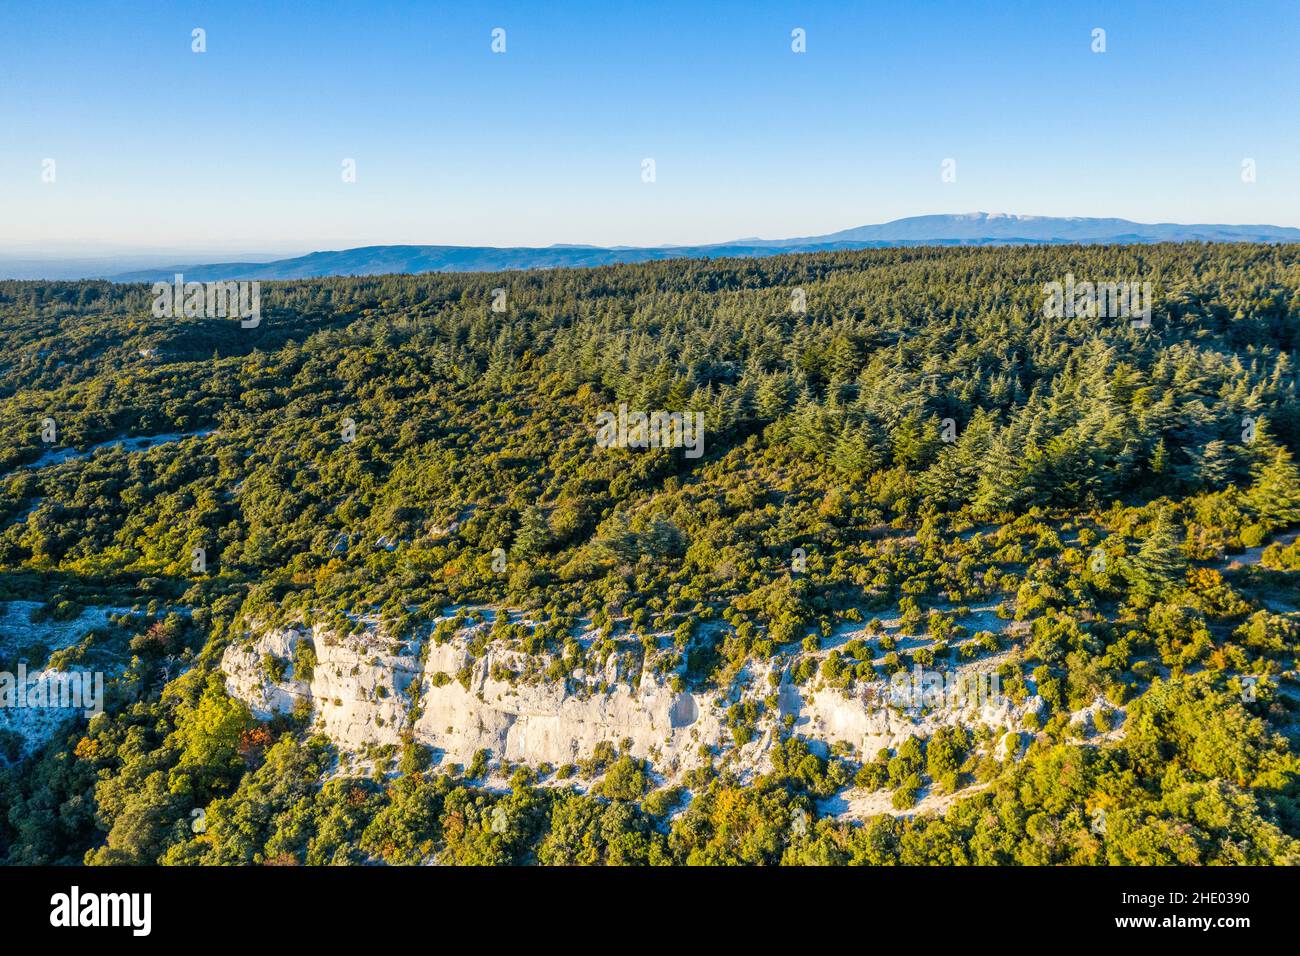 France, Vaucluse, Parc Naturel Regional du Luberon (Luberon Natural Regional Park), Lacoste, Foret de Cedres du Petit Luberon (Cedar forest of Petit L Stock Photo